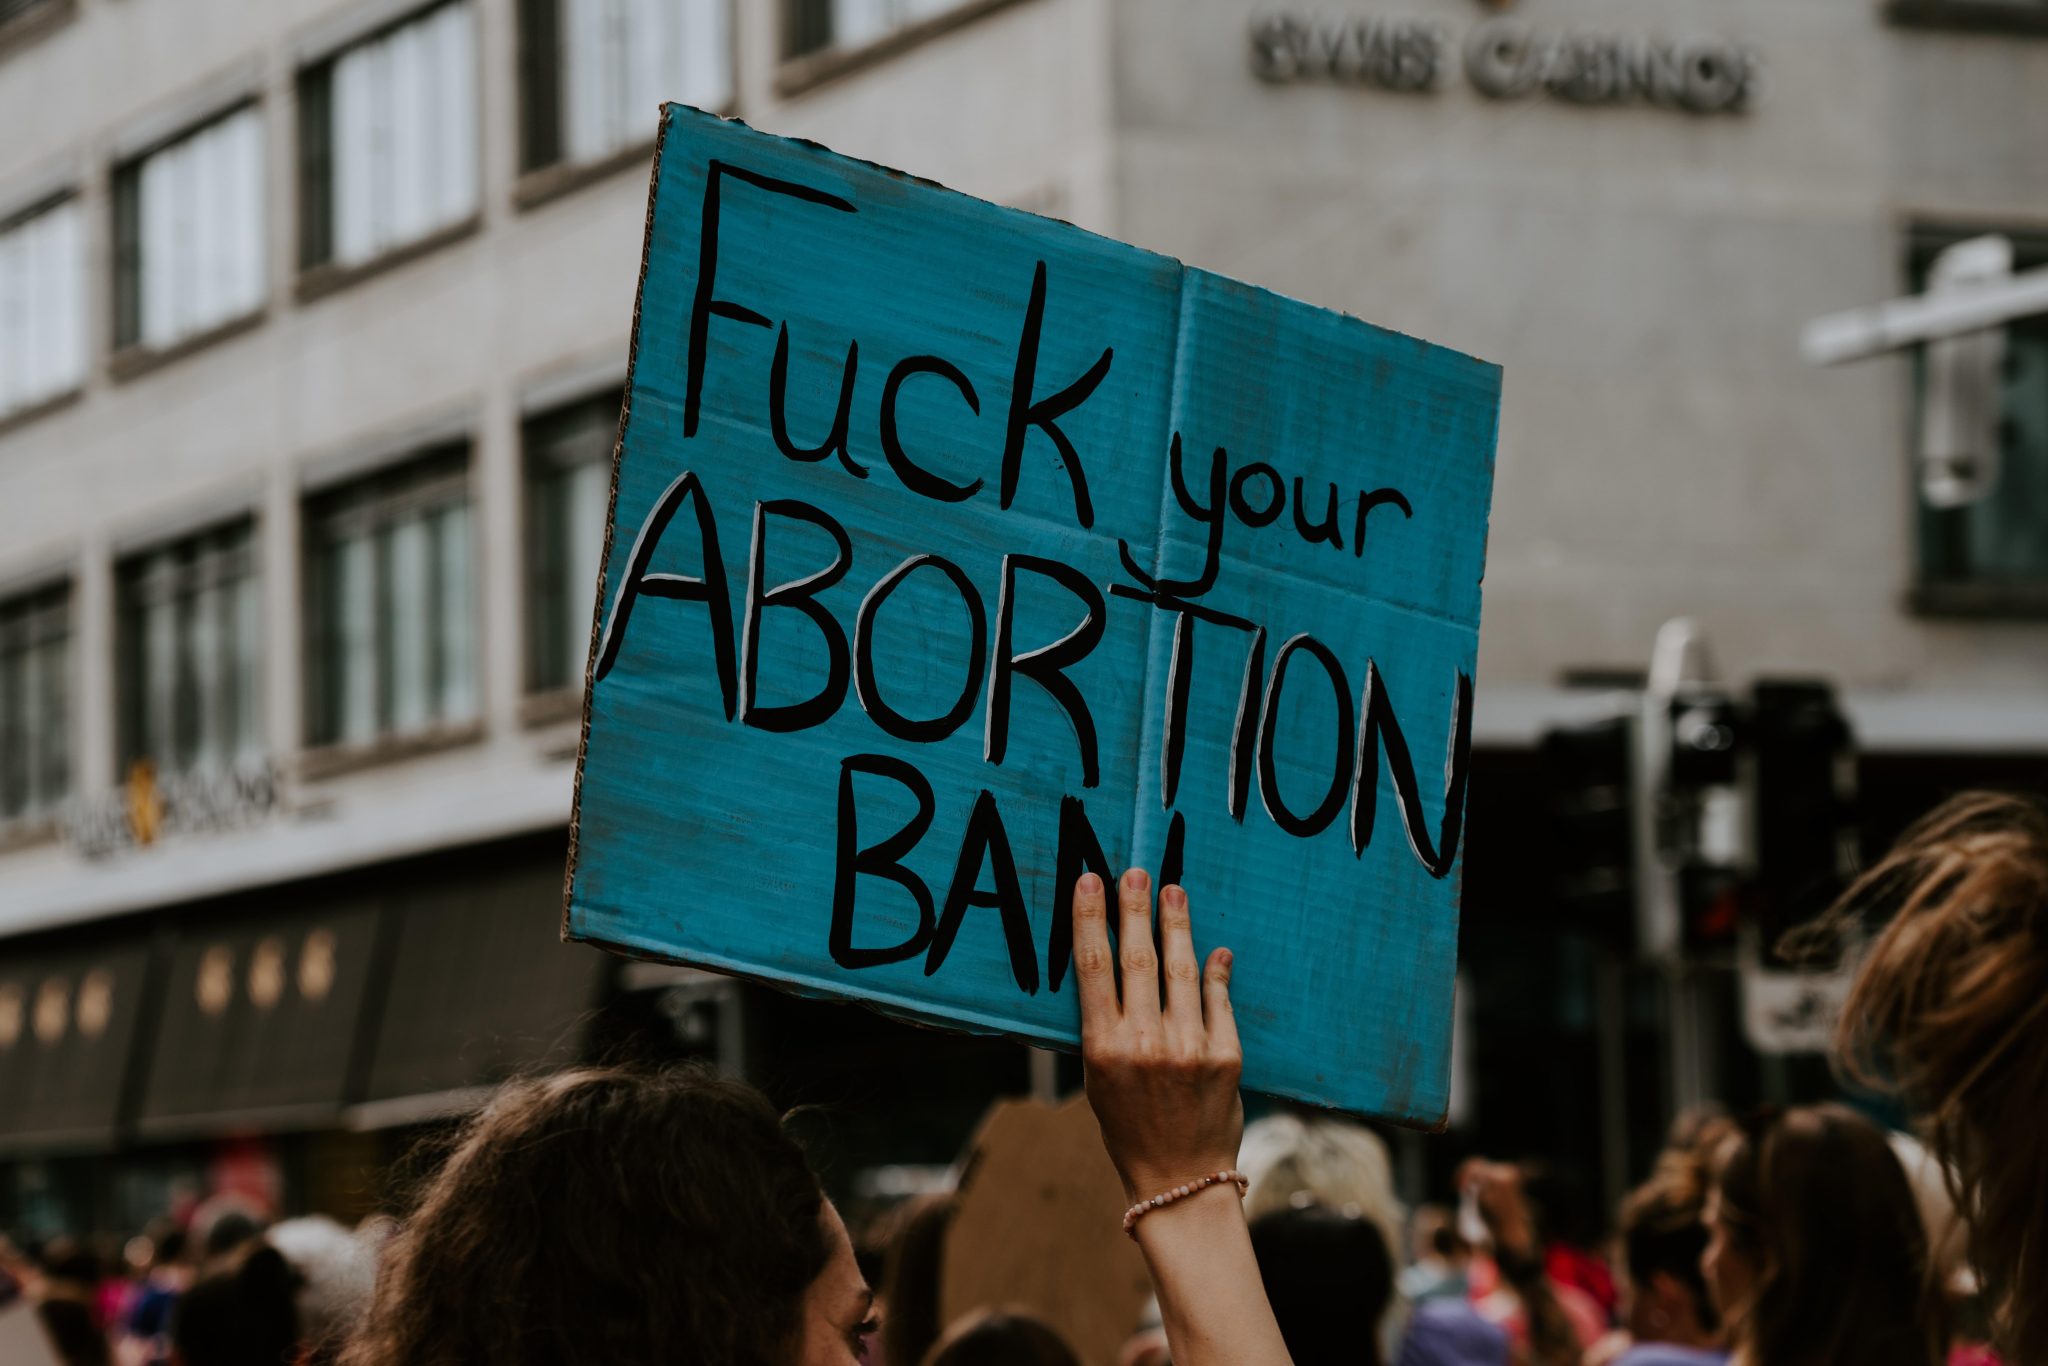 Na het mogelijk schrappen van abortuswet in VS: 4 vrouwen vertellen waarom abortus voor hen de juiste keuze was - 1